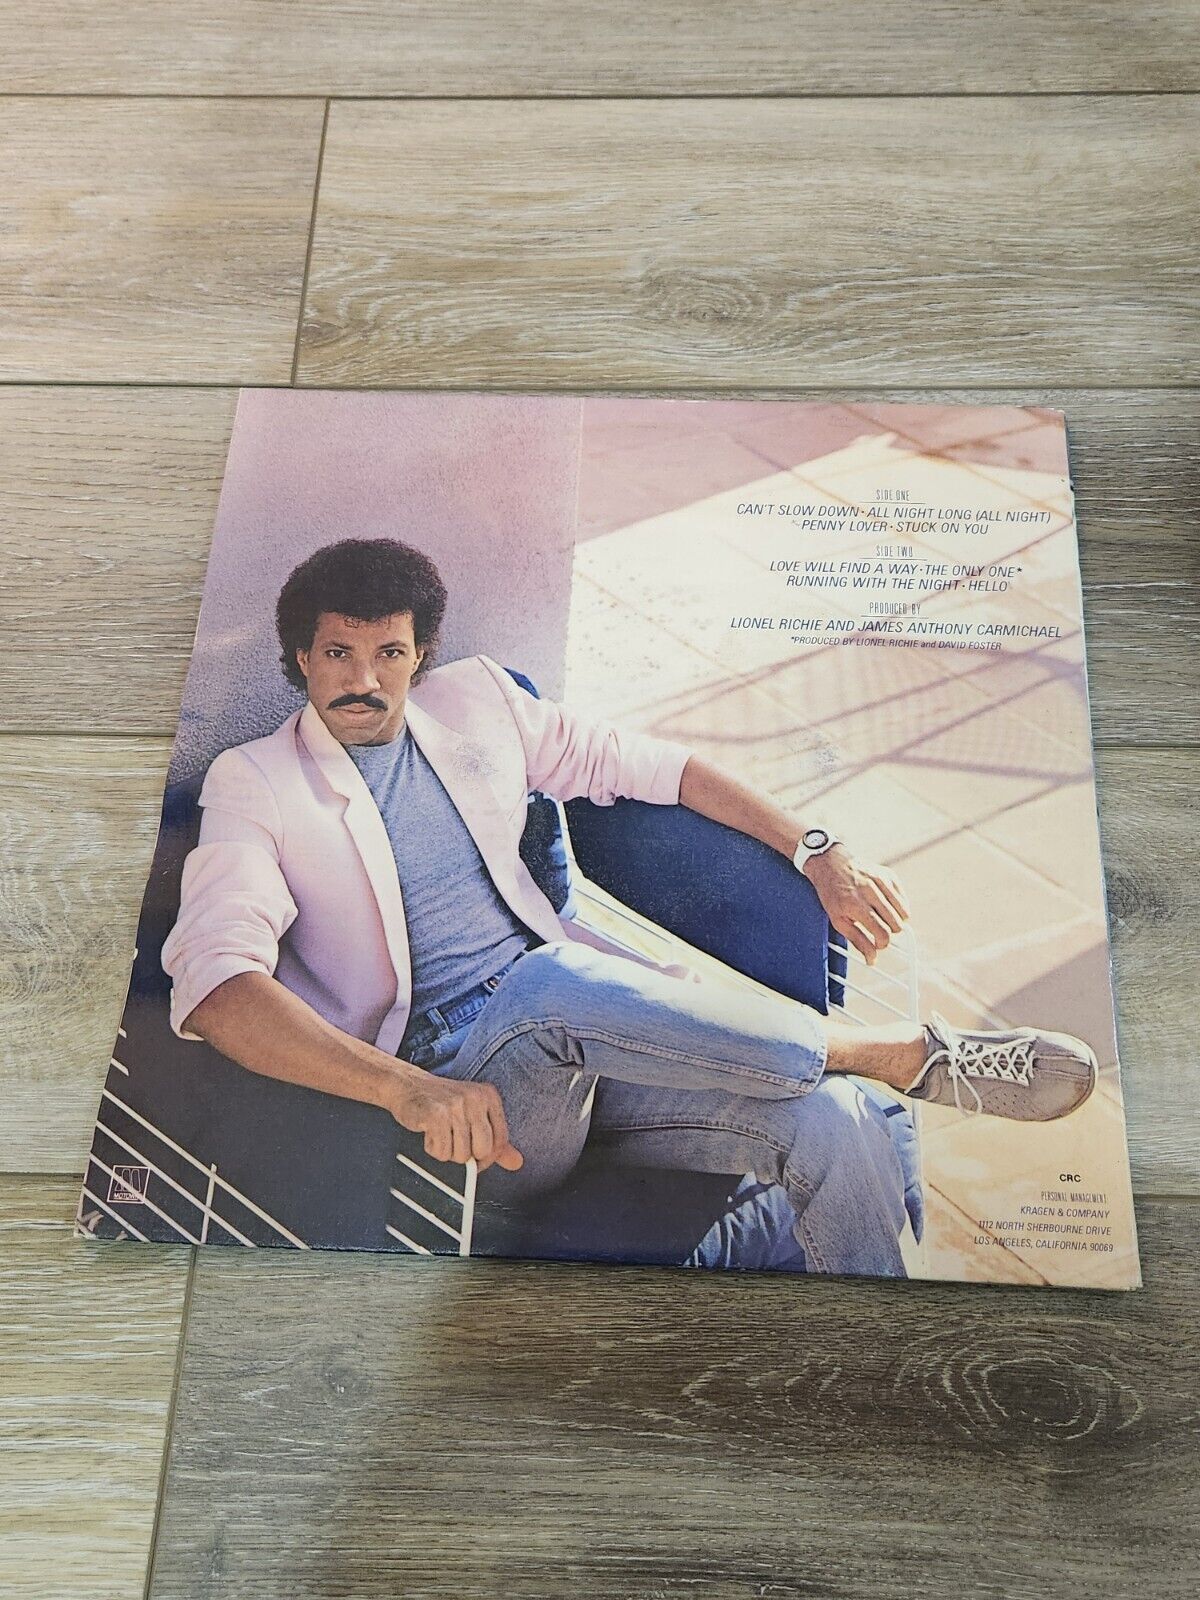 Lionel Richie “Cant Slow Down” Vinyl LP Original Vintage 1983 Motown Records